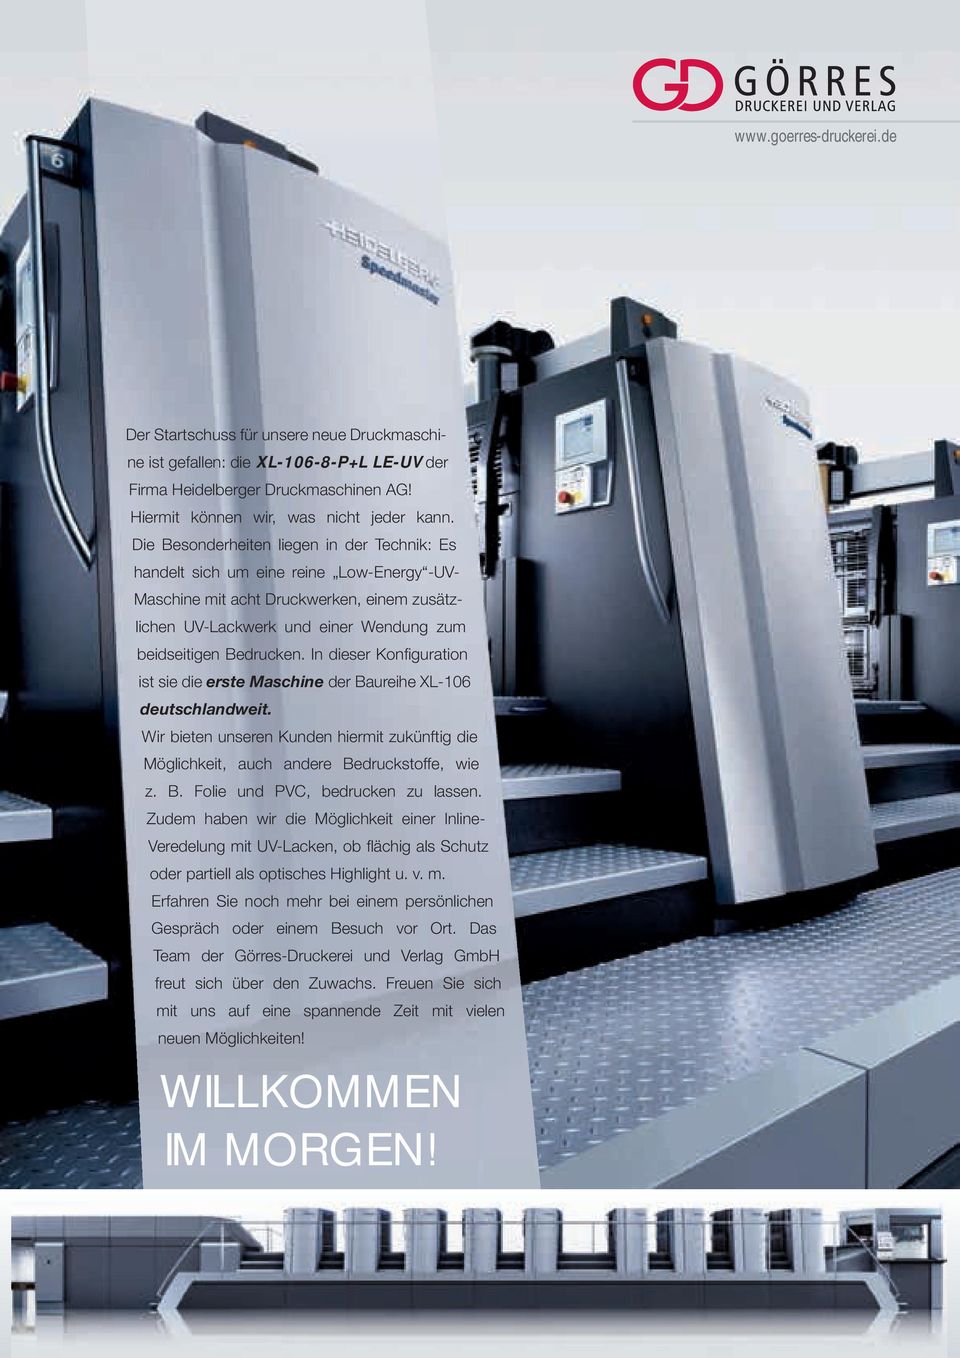 In dieser Konfiguration ist sie die erste Maschine der Baureihe XL-106 deutschlandweit. Wir bieten unseren Kunden hiermit zukünftig die Möglichkeit, auch andere Bedruckstoffe, wie z. B. Folie und PVC, bedrucken zu lassen.